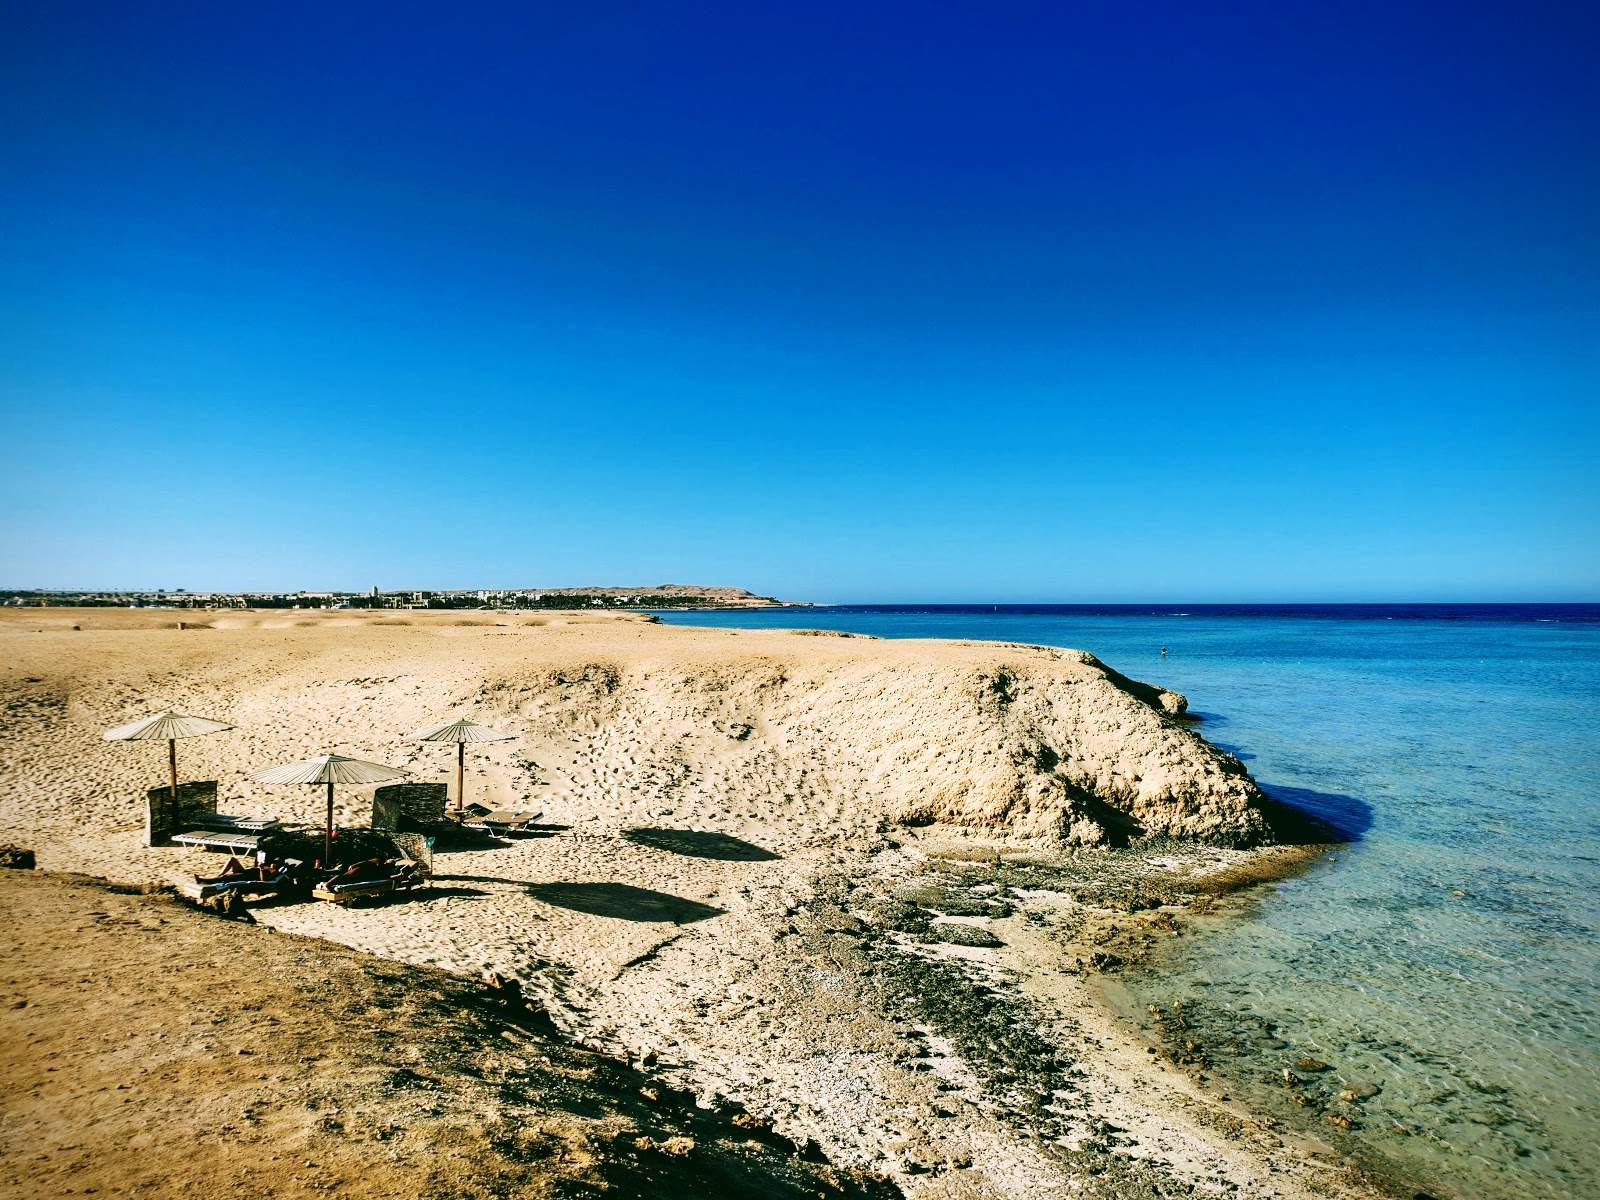 Foto af Fayrouz Beach - populært sted blandt afslapningskendere